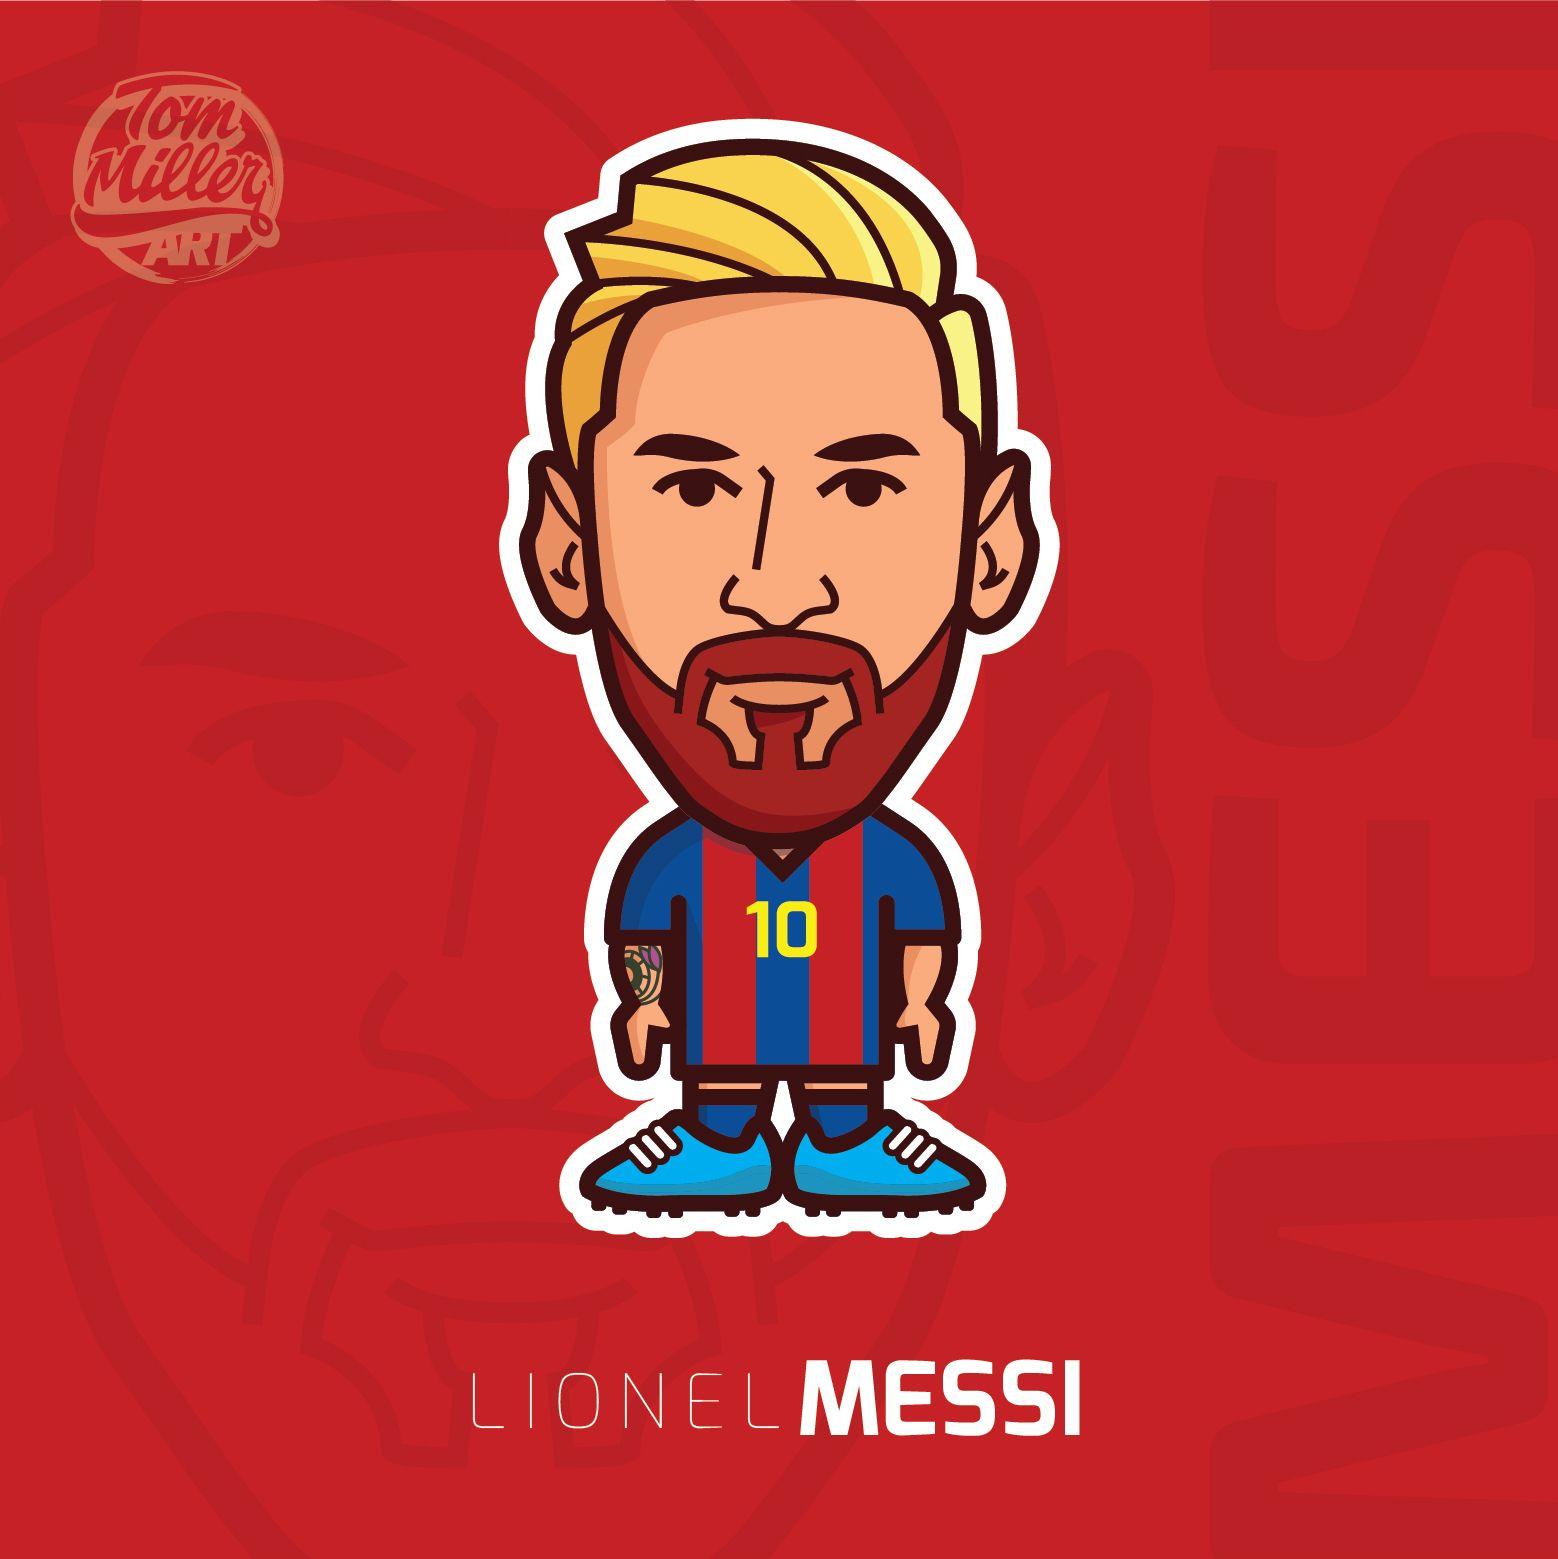 Messi Cartoon Wallpapers - Wallpaper Cave1558 x 1559